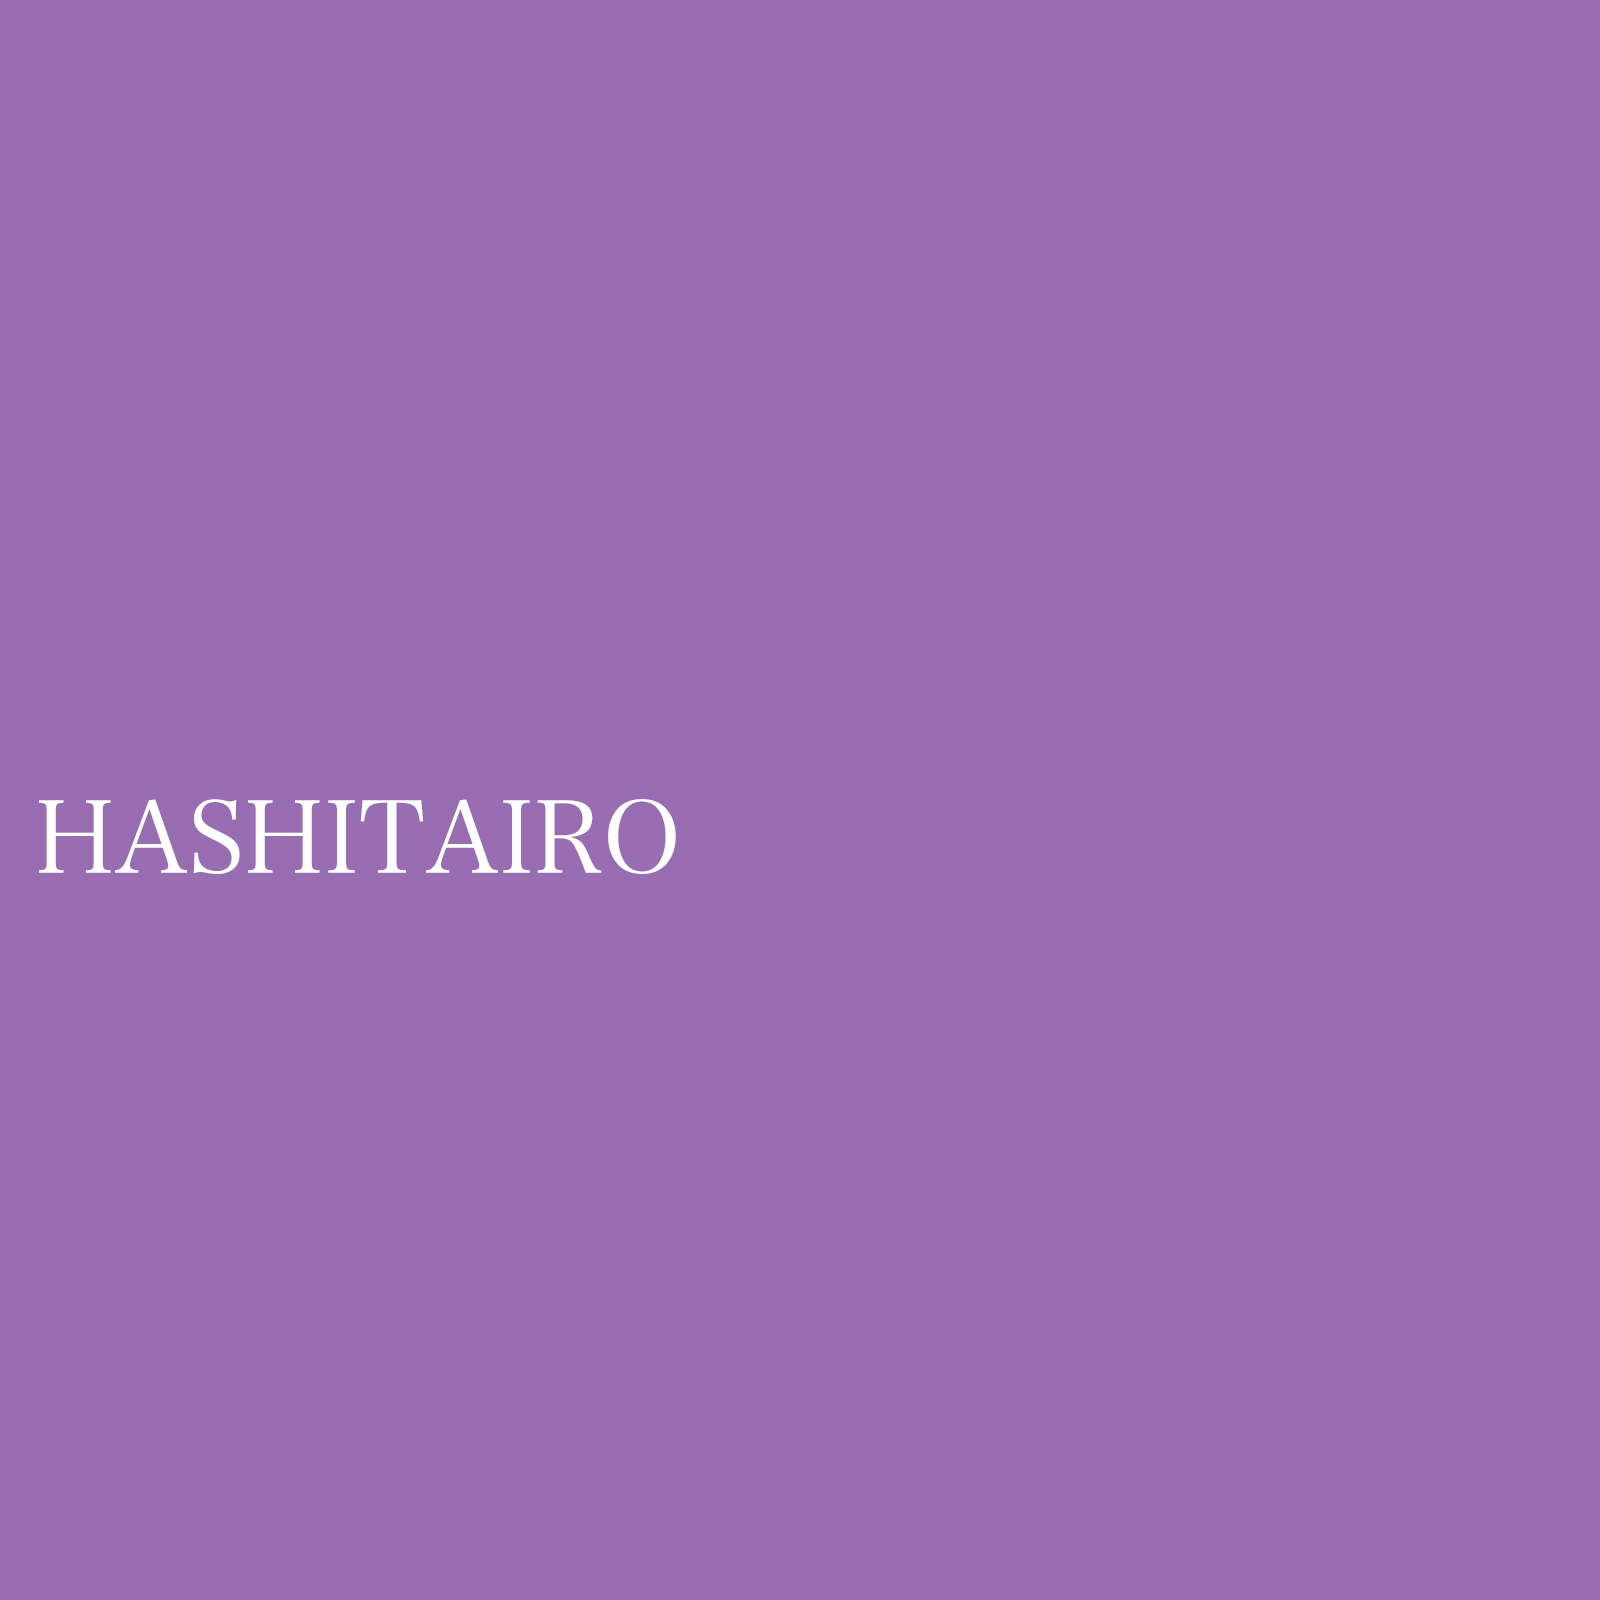 hashitairo